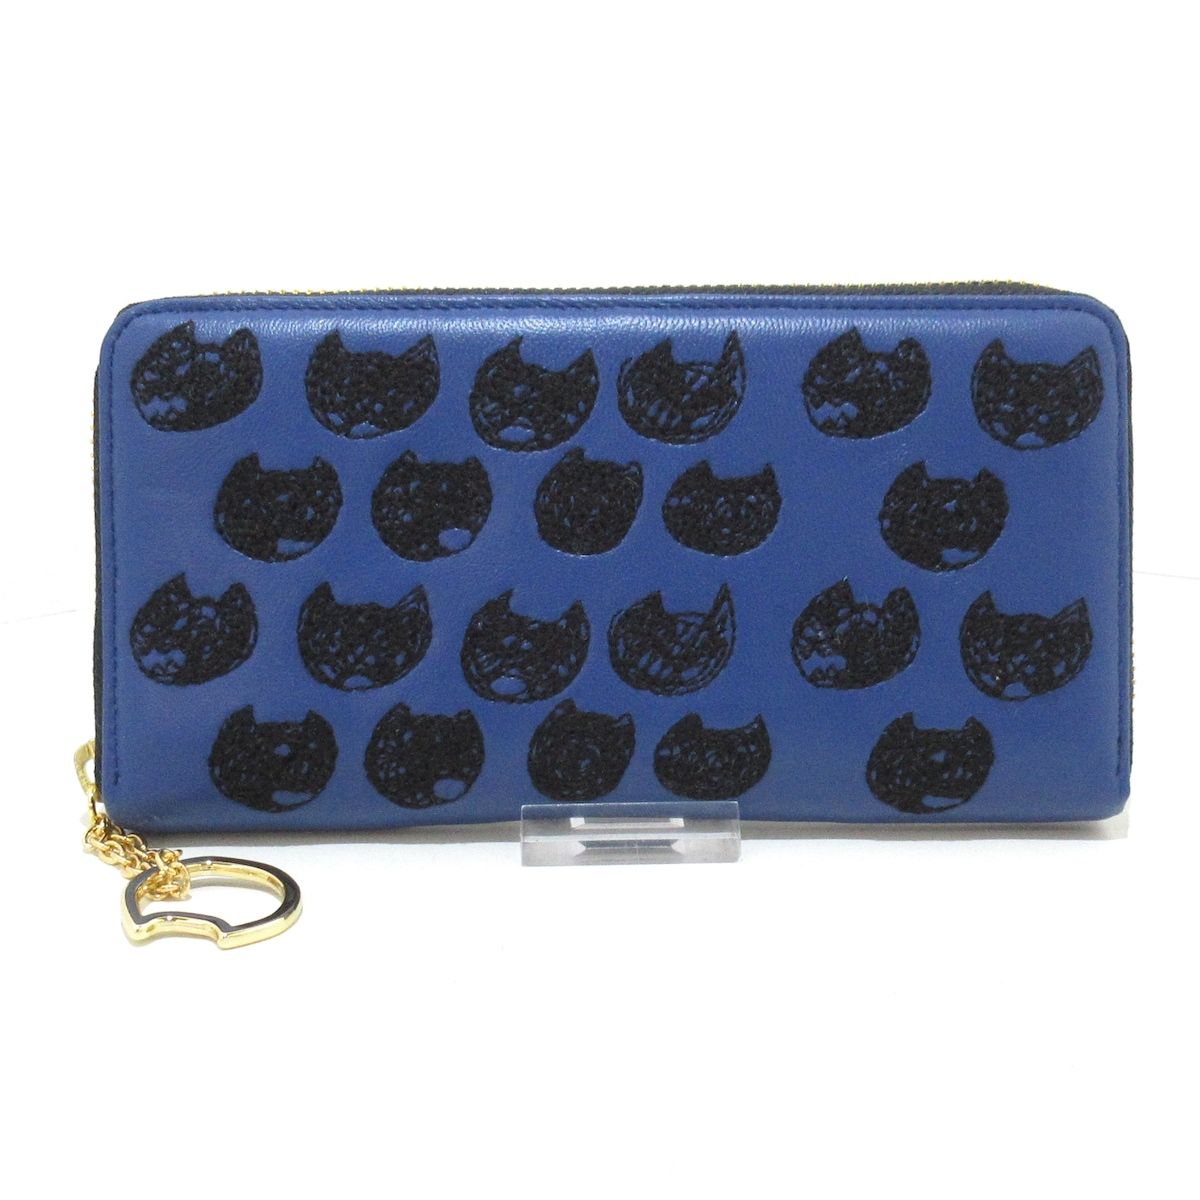 TSUMORI CHISATO(ツモリチサト) 長財布 ブルー ネコ/刺繍 レザー